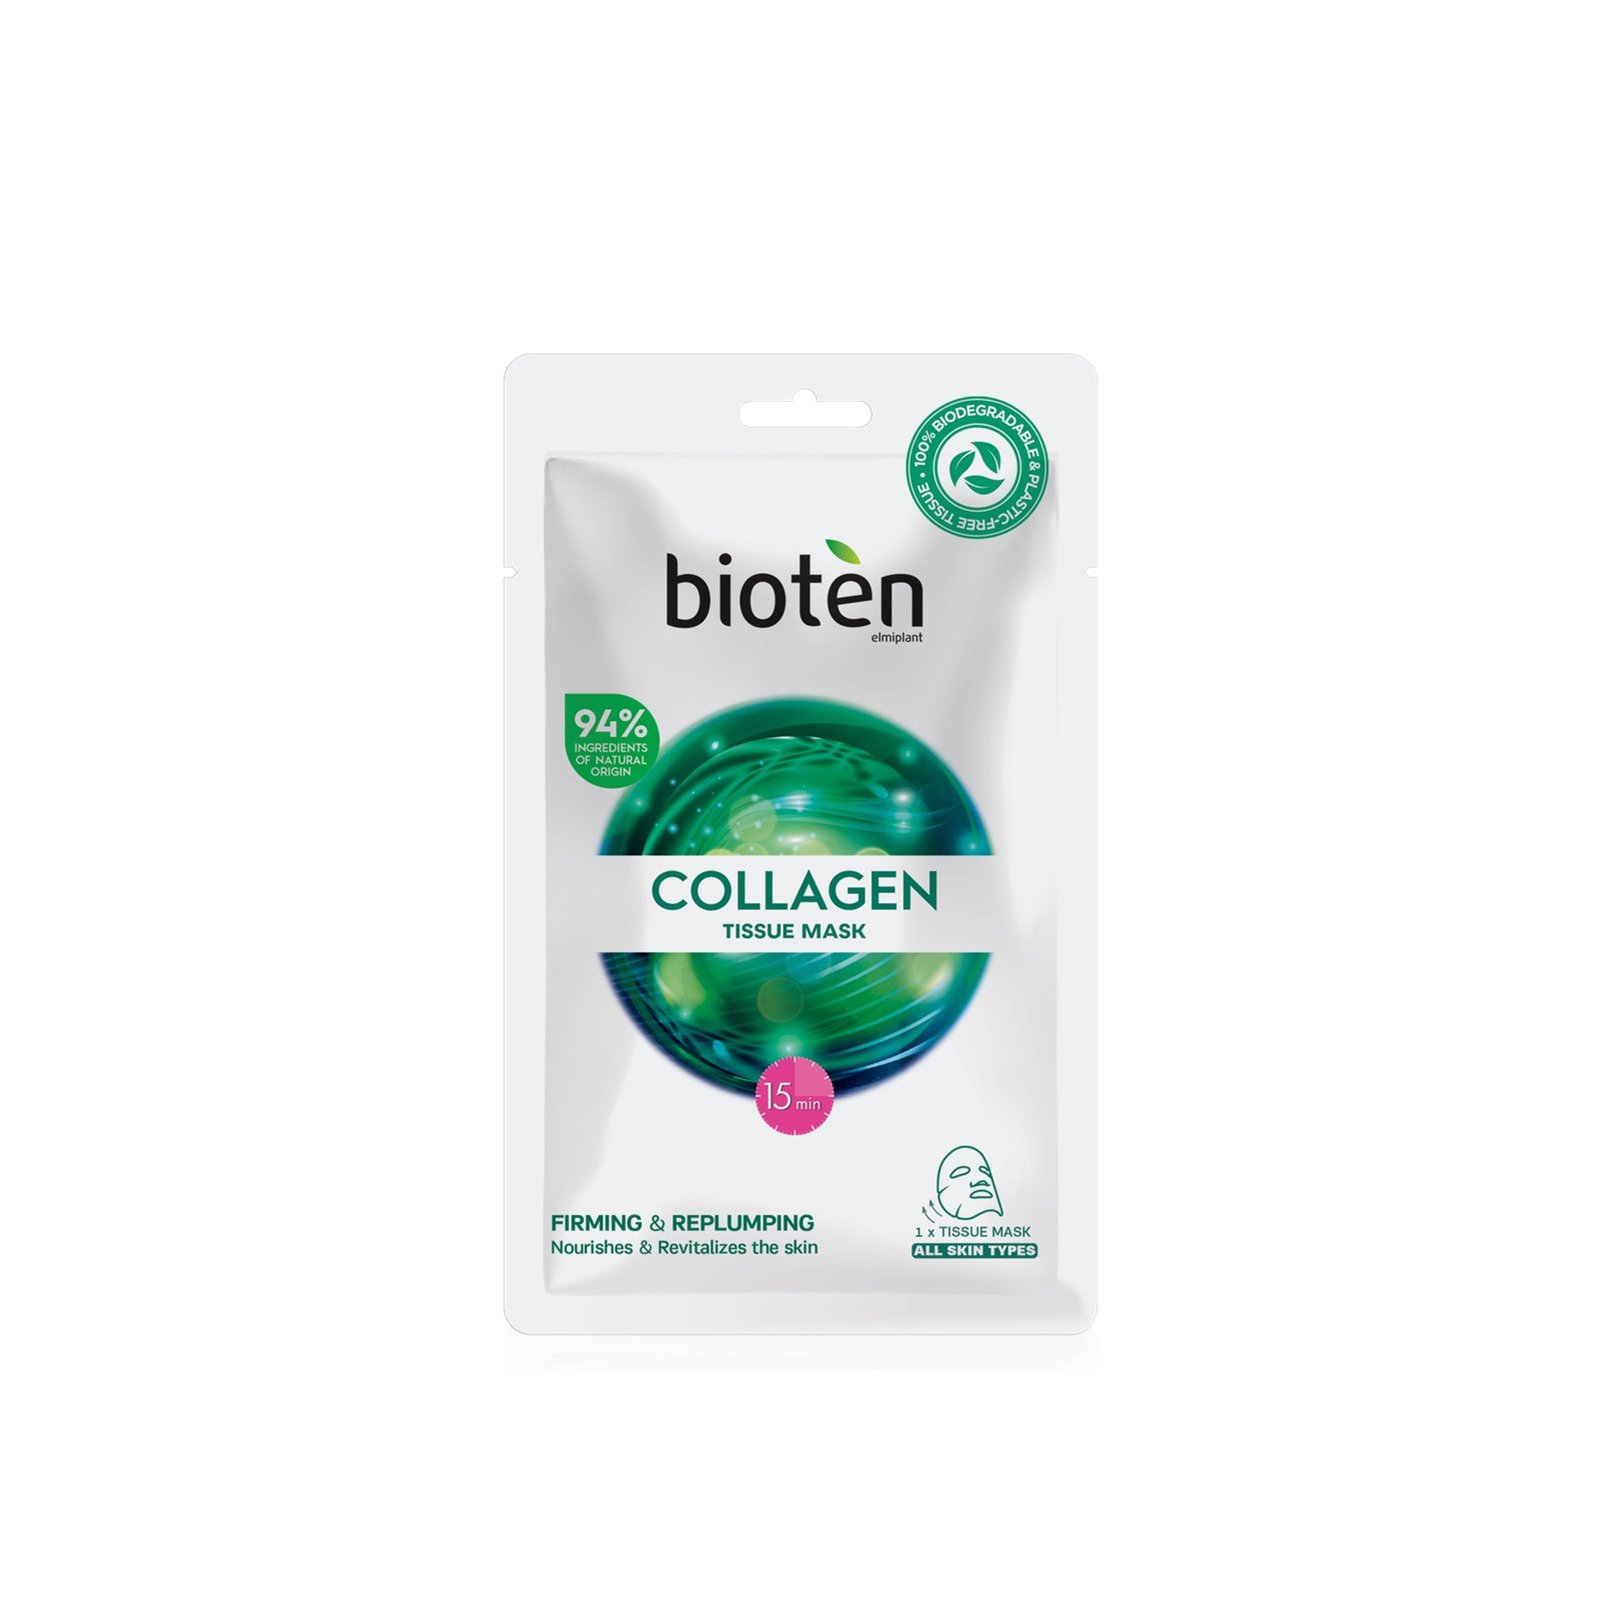 bioten Collagen Tissue Mask x1